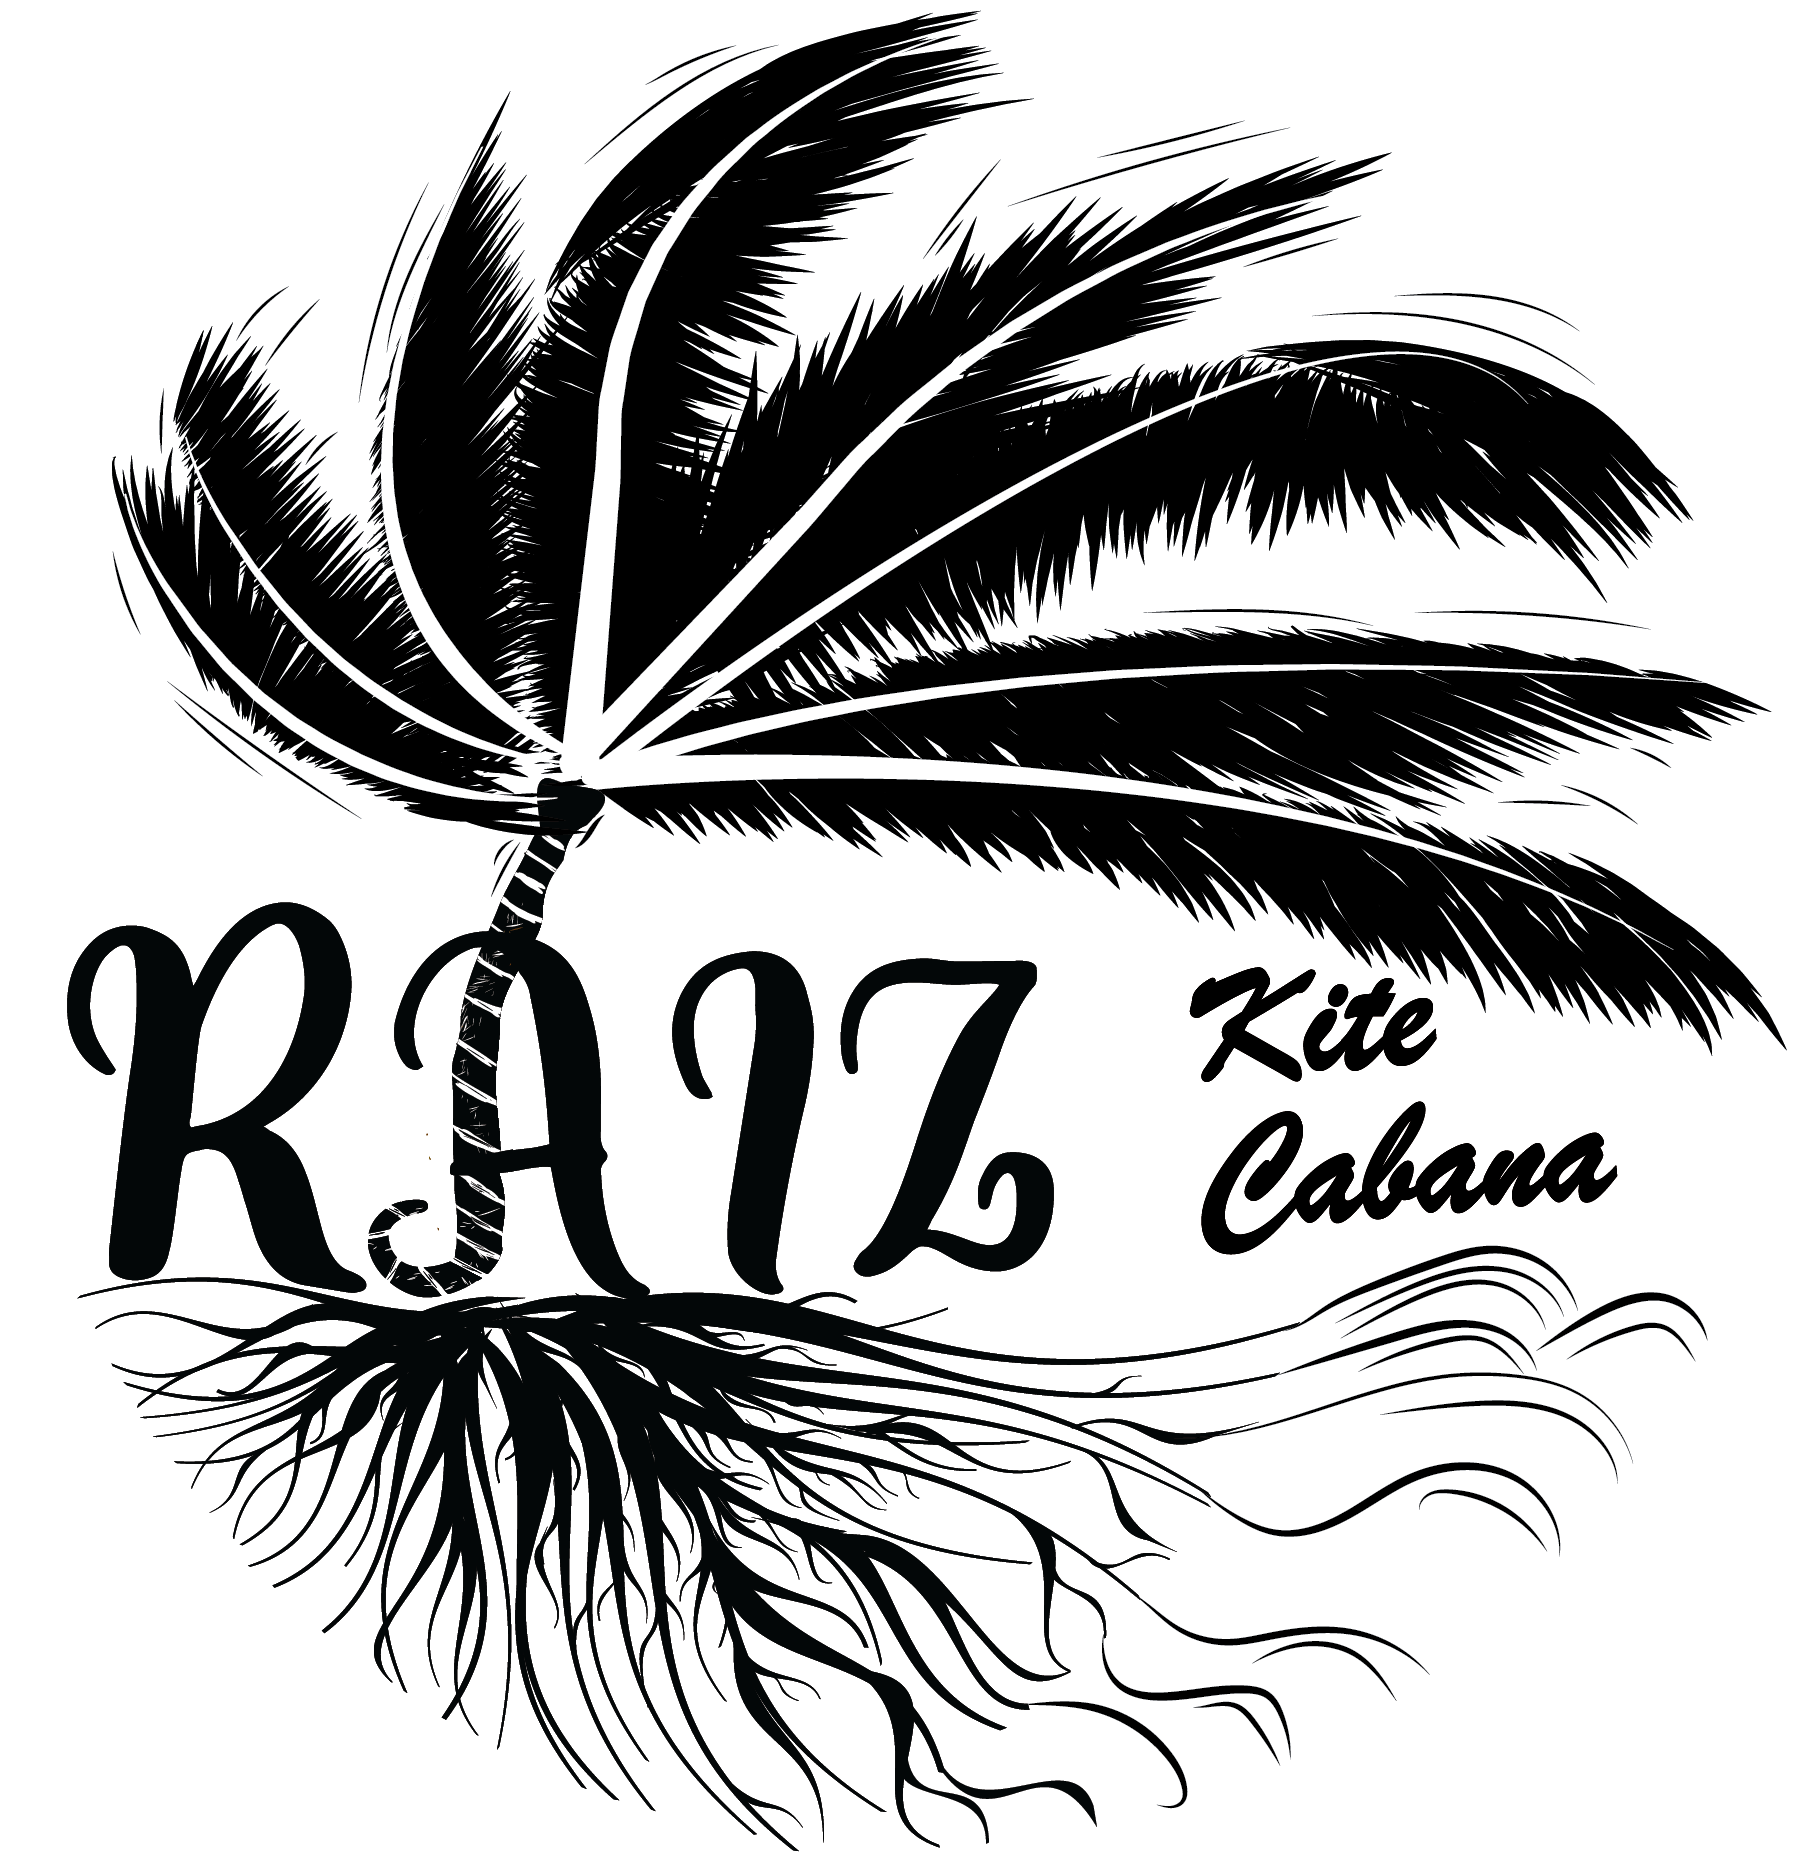 Raiz Kite Cabana